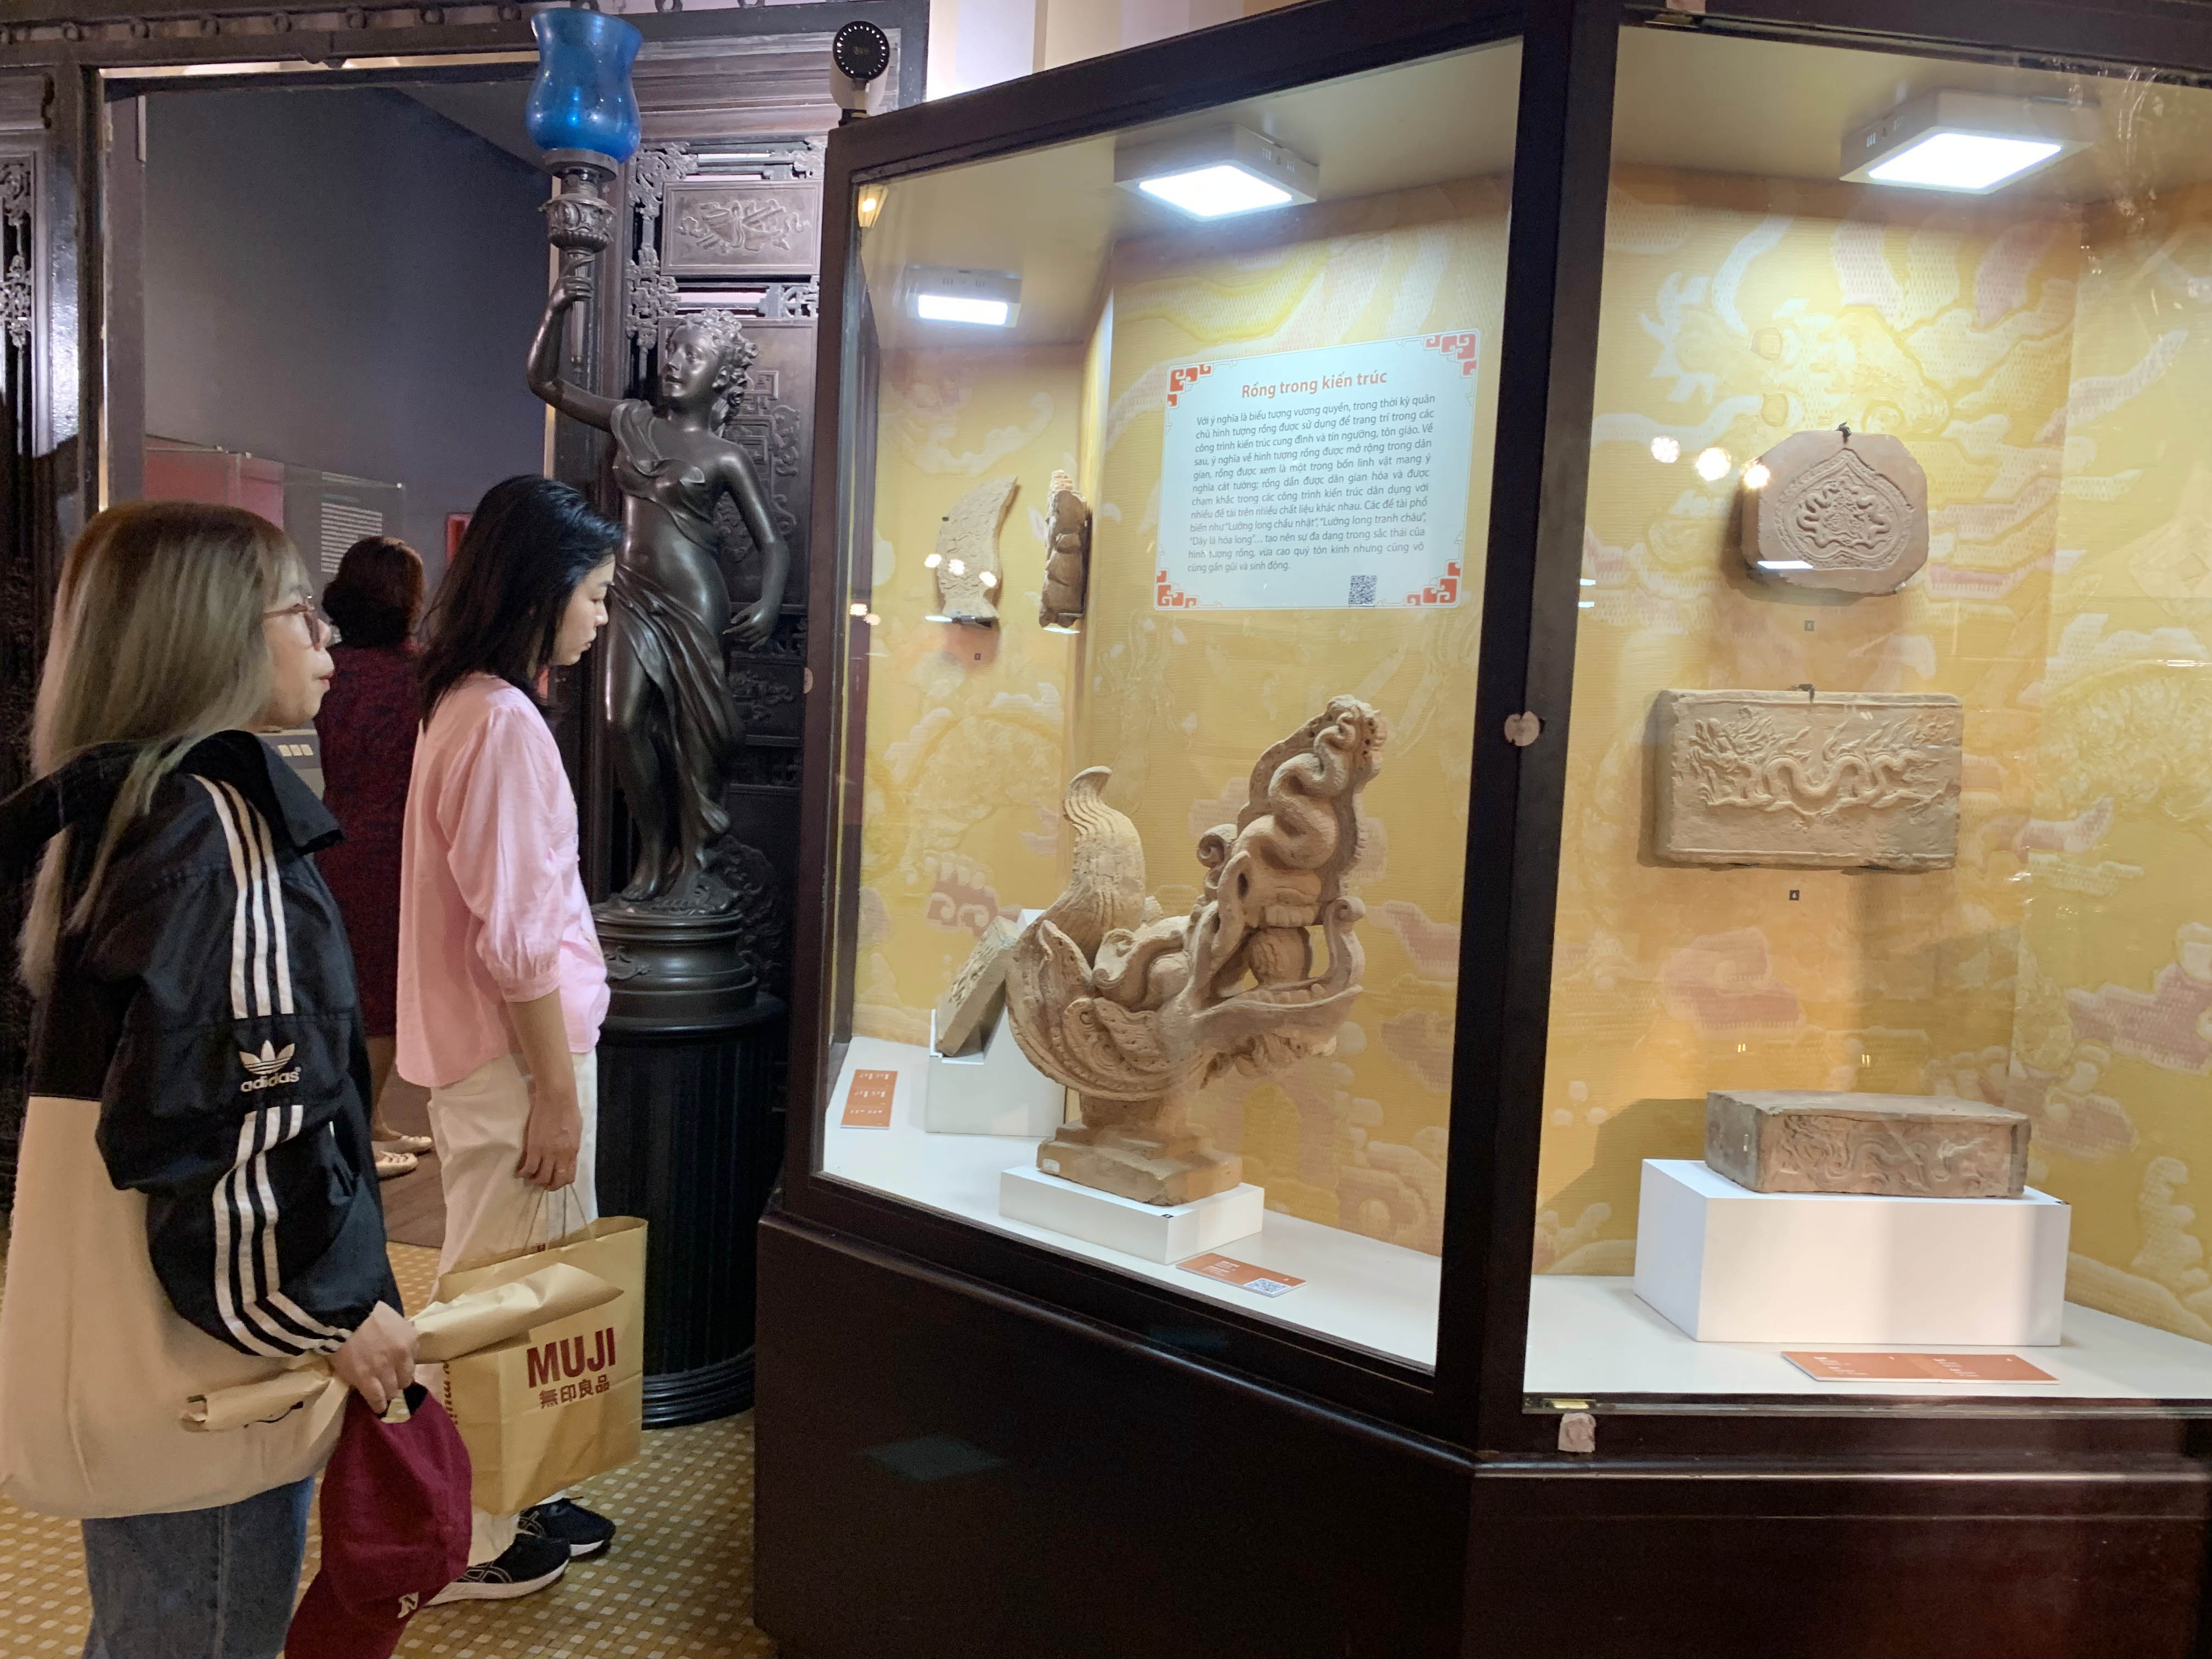 Triển lãm mang chủ đề “Long Vân khánh hội – Hình tượng rồng trong văn hóa Việt Nam” giới thiệu hơn 100 hiện vật quý của Bảo tàng Lịch sử TP.HCM và một số nhà sưu tập.&nbsp;